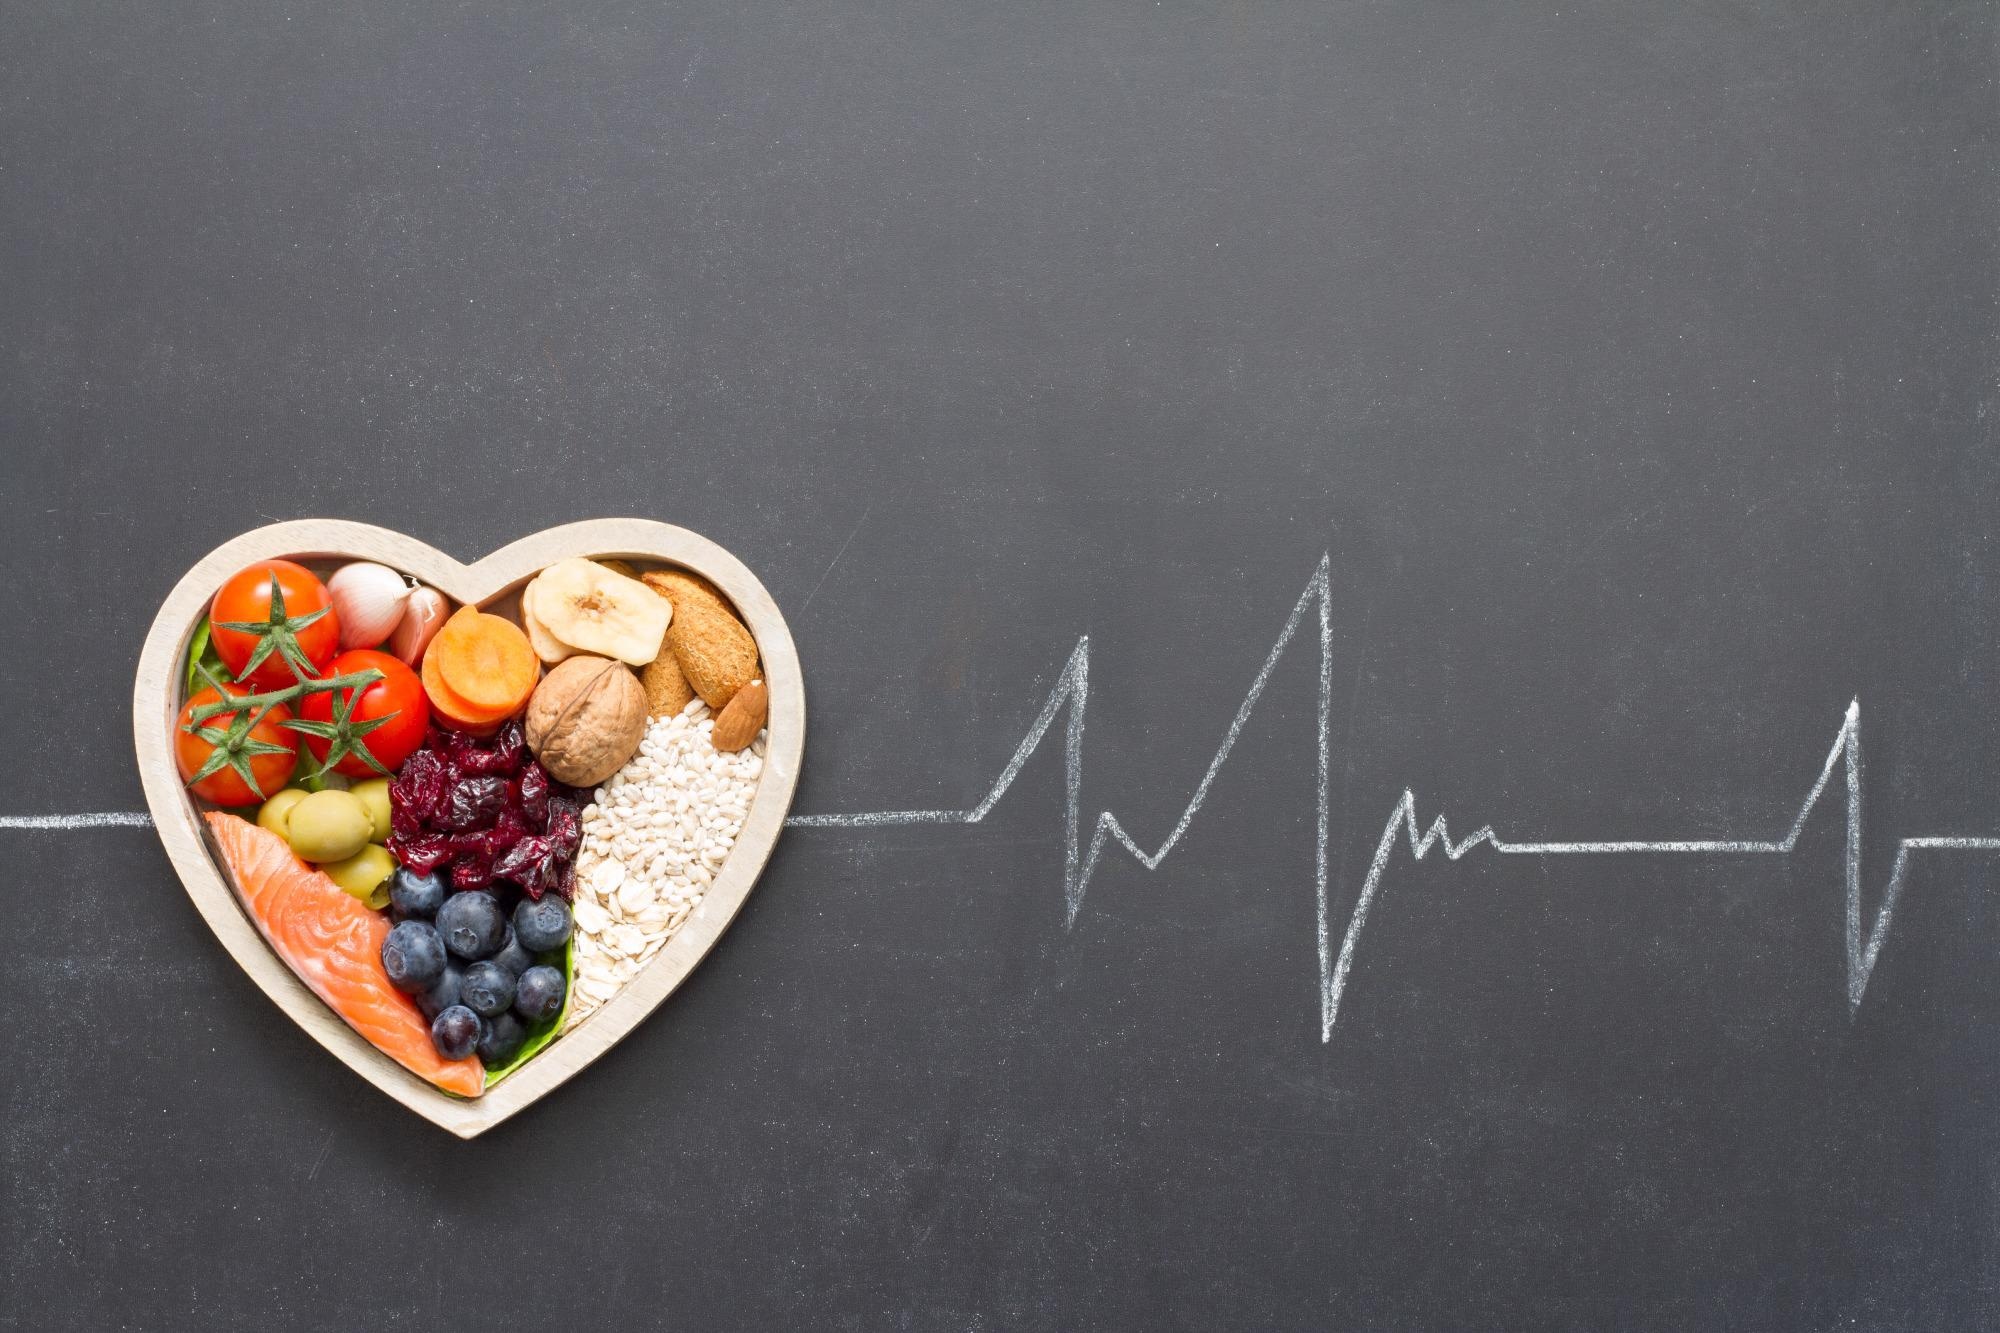 Estudio: Nutrición, longevidad y enfermedad: de los mecanismos moleculares a las intervenciones.  Haber de imagen: udra11/Shutterstock